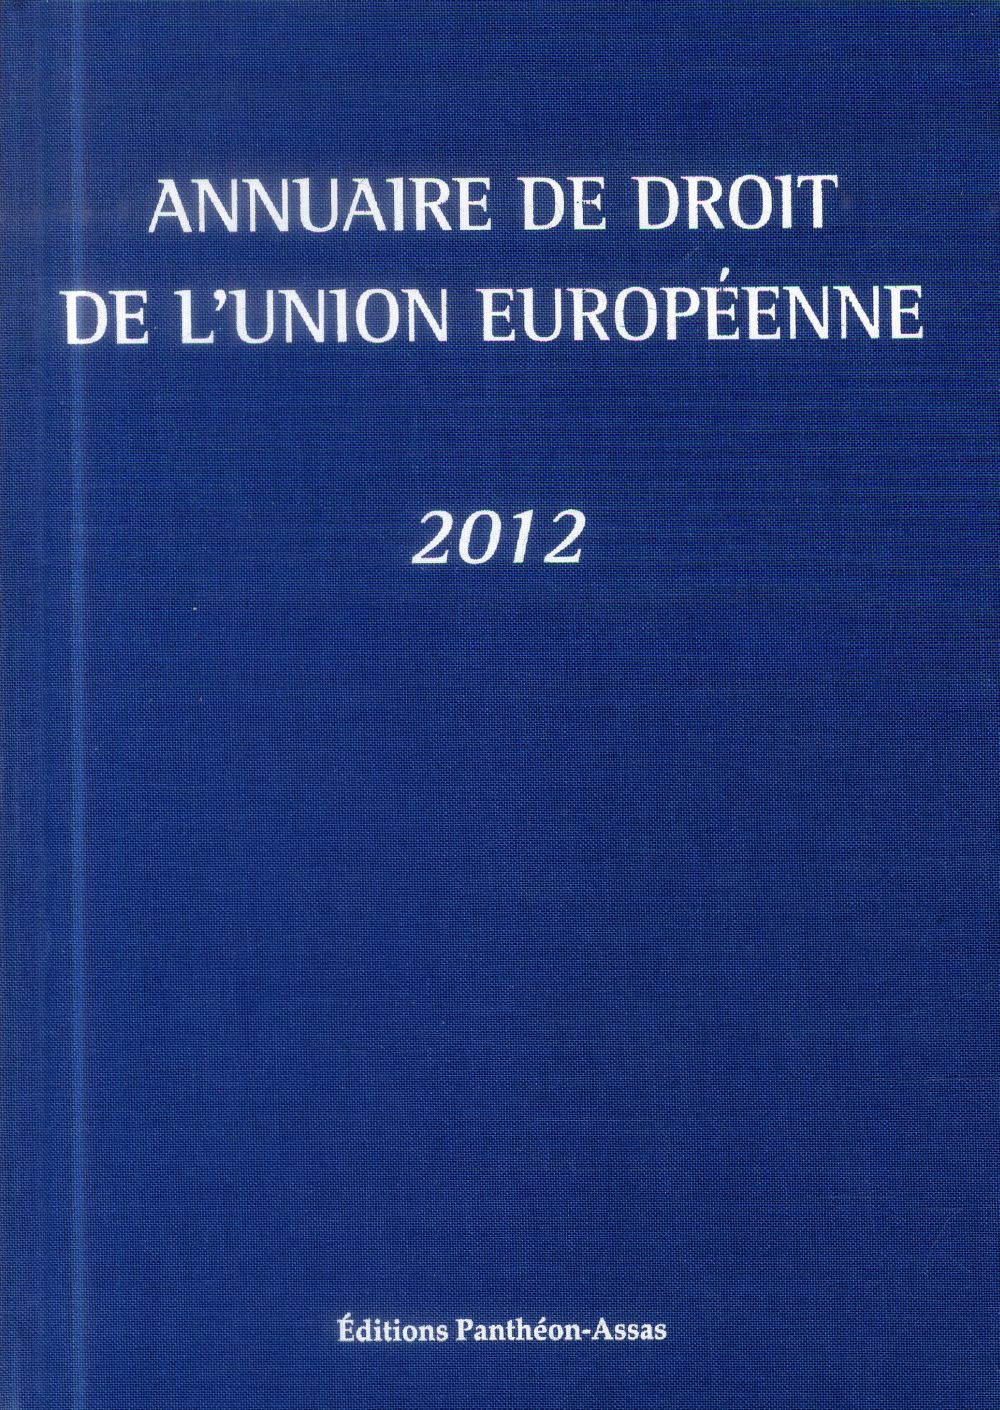 ANNUAIRE DE DROIT DE L'UNION EUROPEENNE 2012